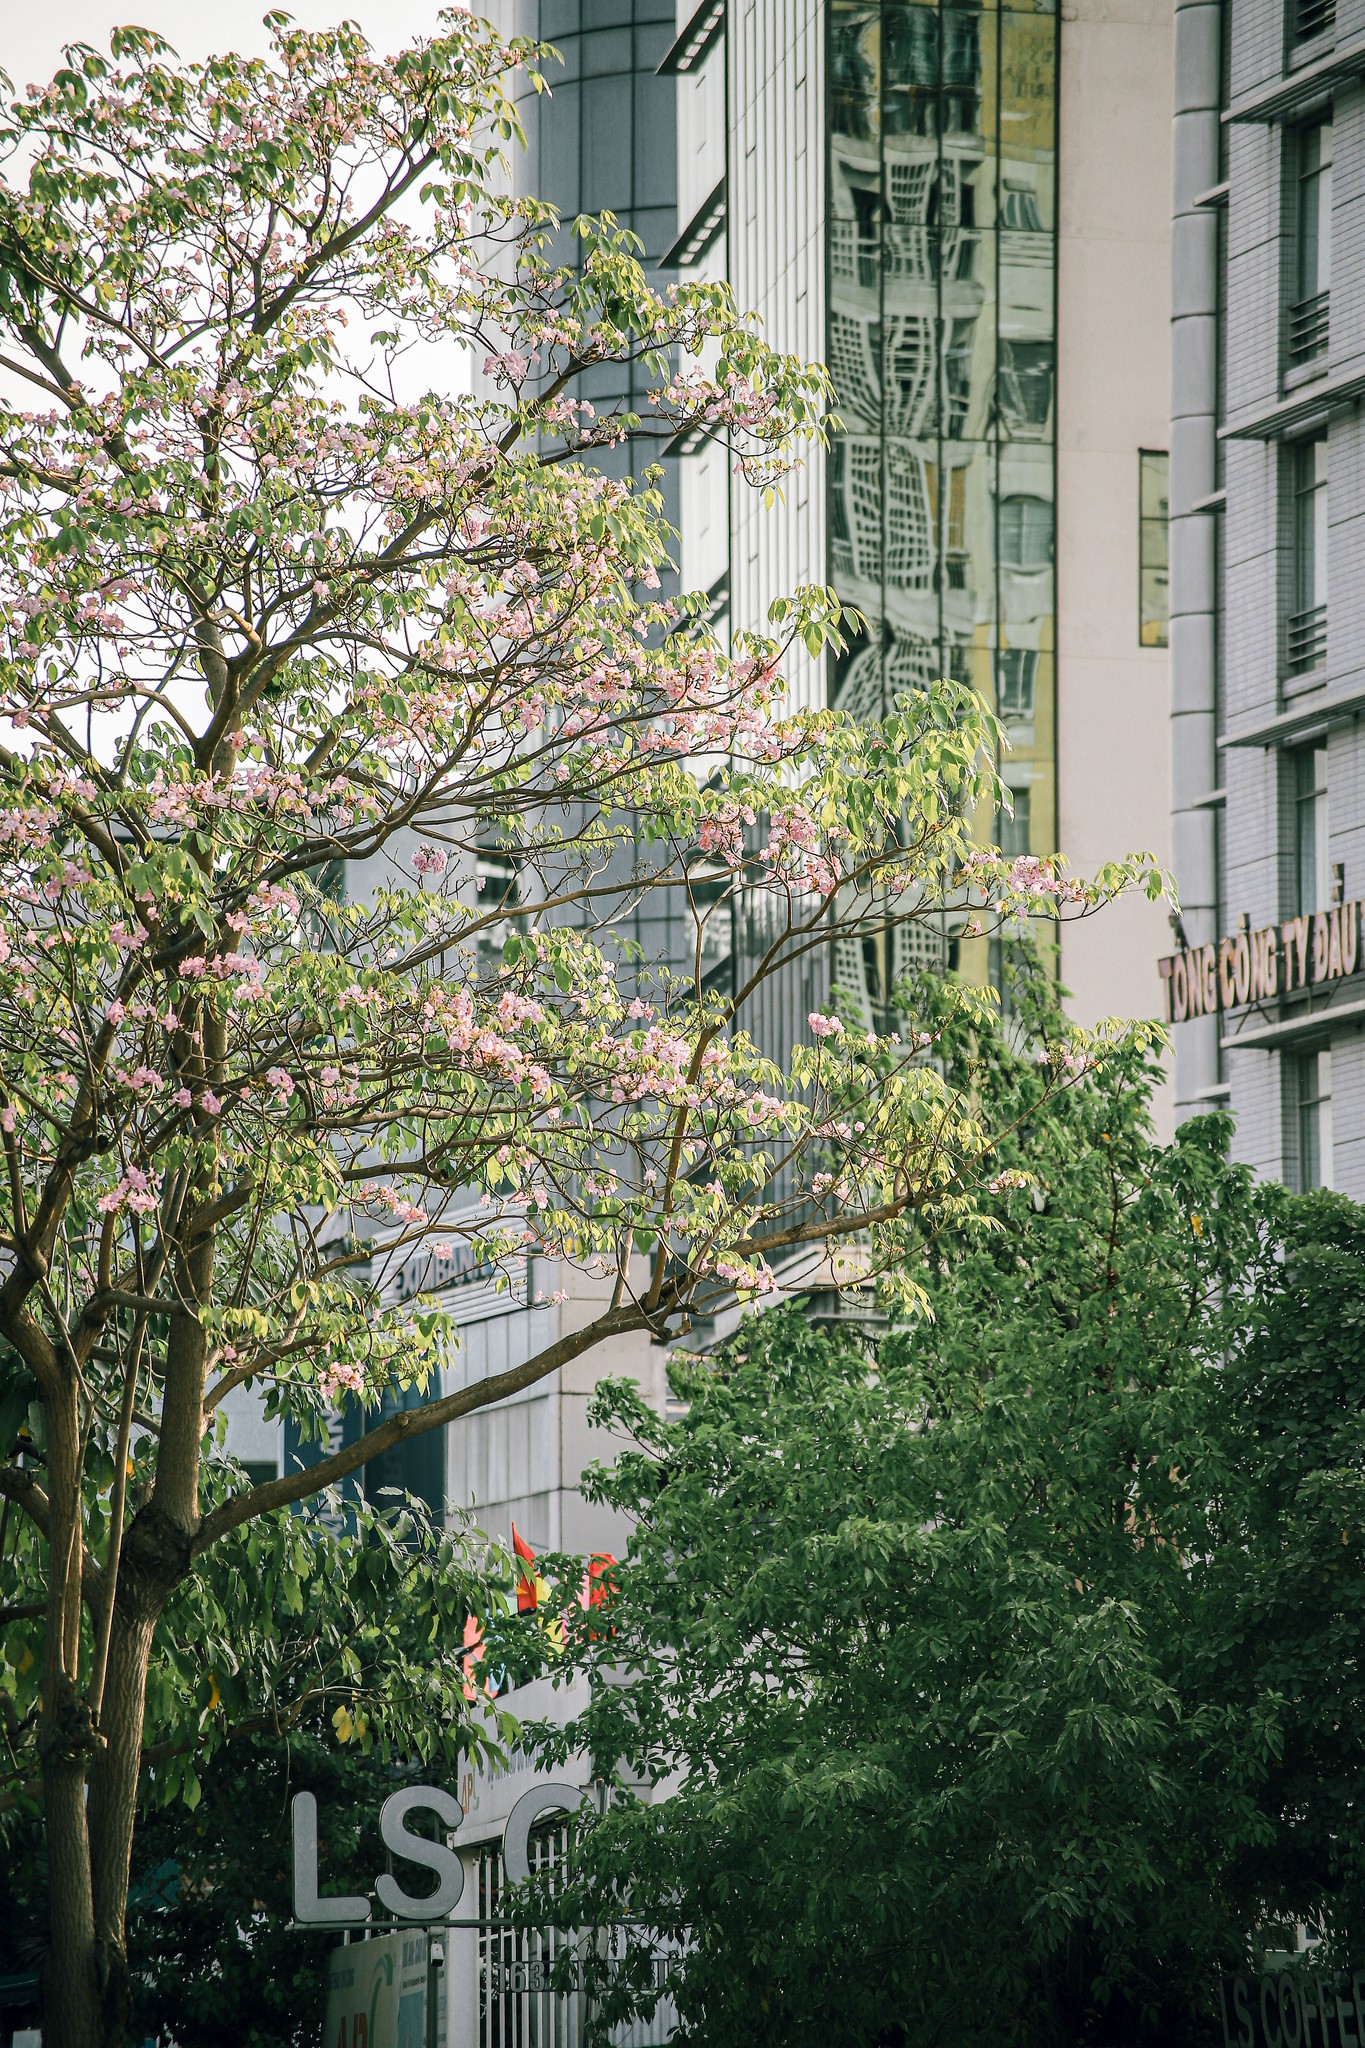 Mùa kèn hồng rợp trời Sài Gòn, chợt thấy thành phố mộng mơ biết bao giữa sắc hoa rực rỡ- Ảnh 6.